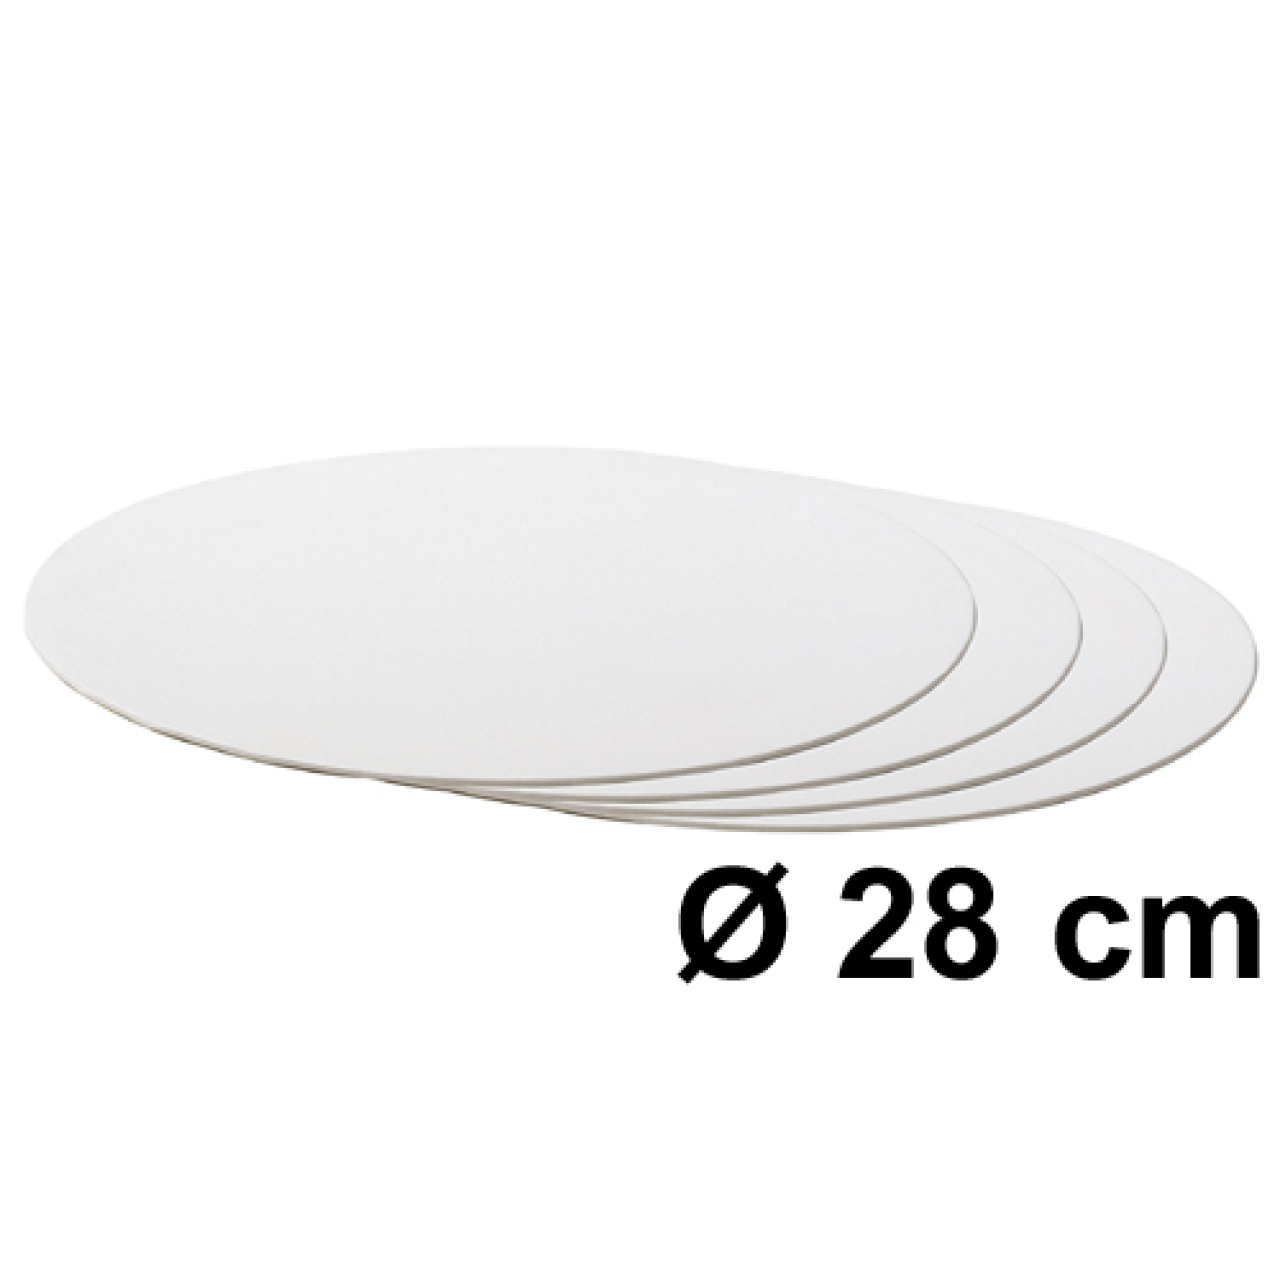 Tortenscheibe Weiß 28 cm